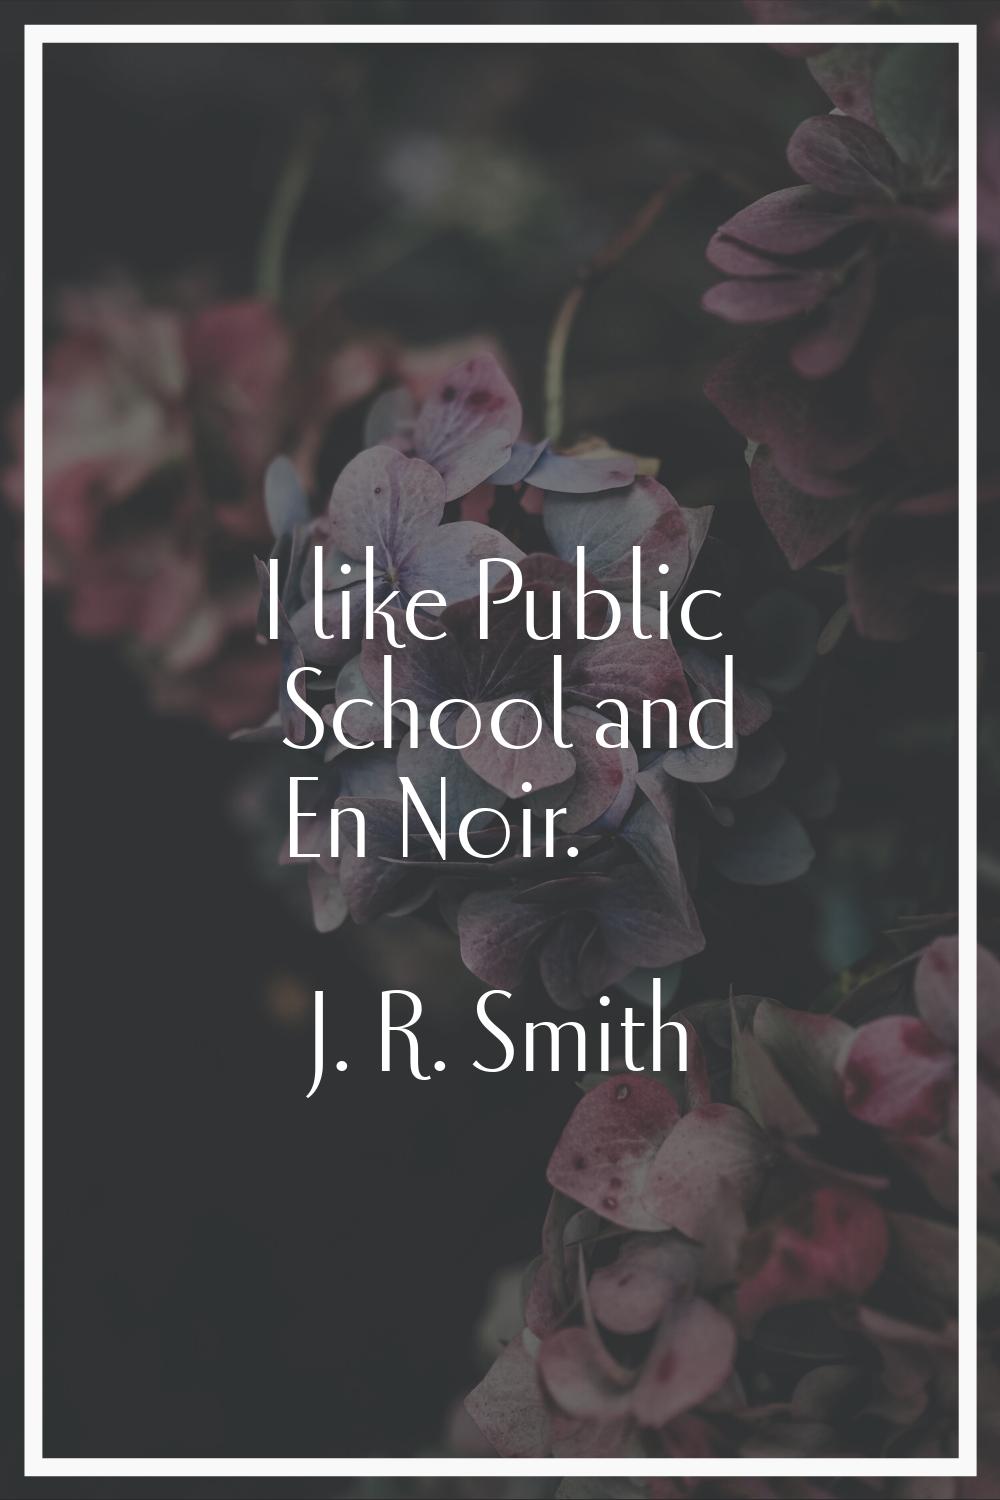 I like Public School and En Noir.